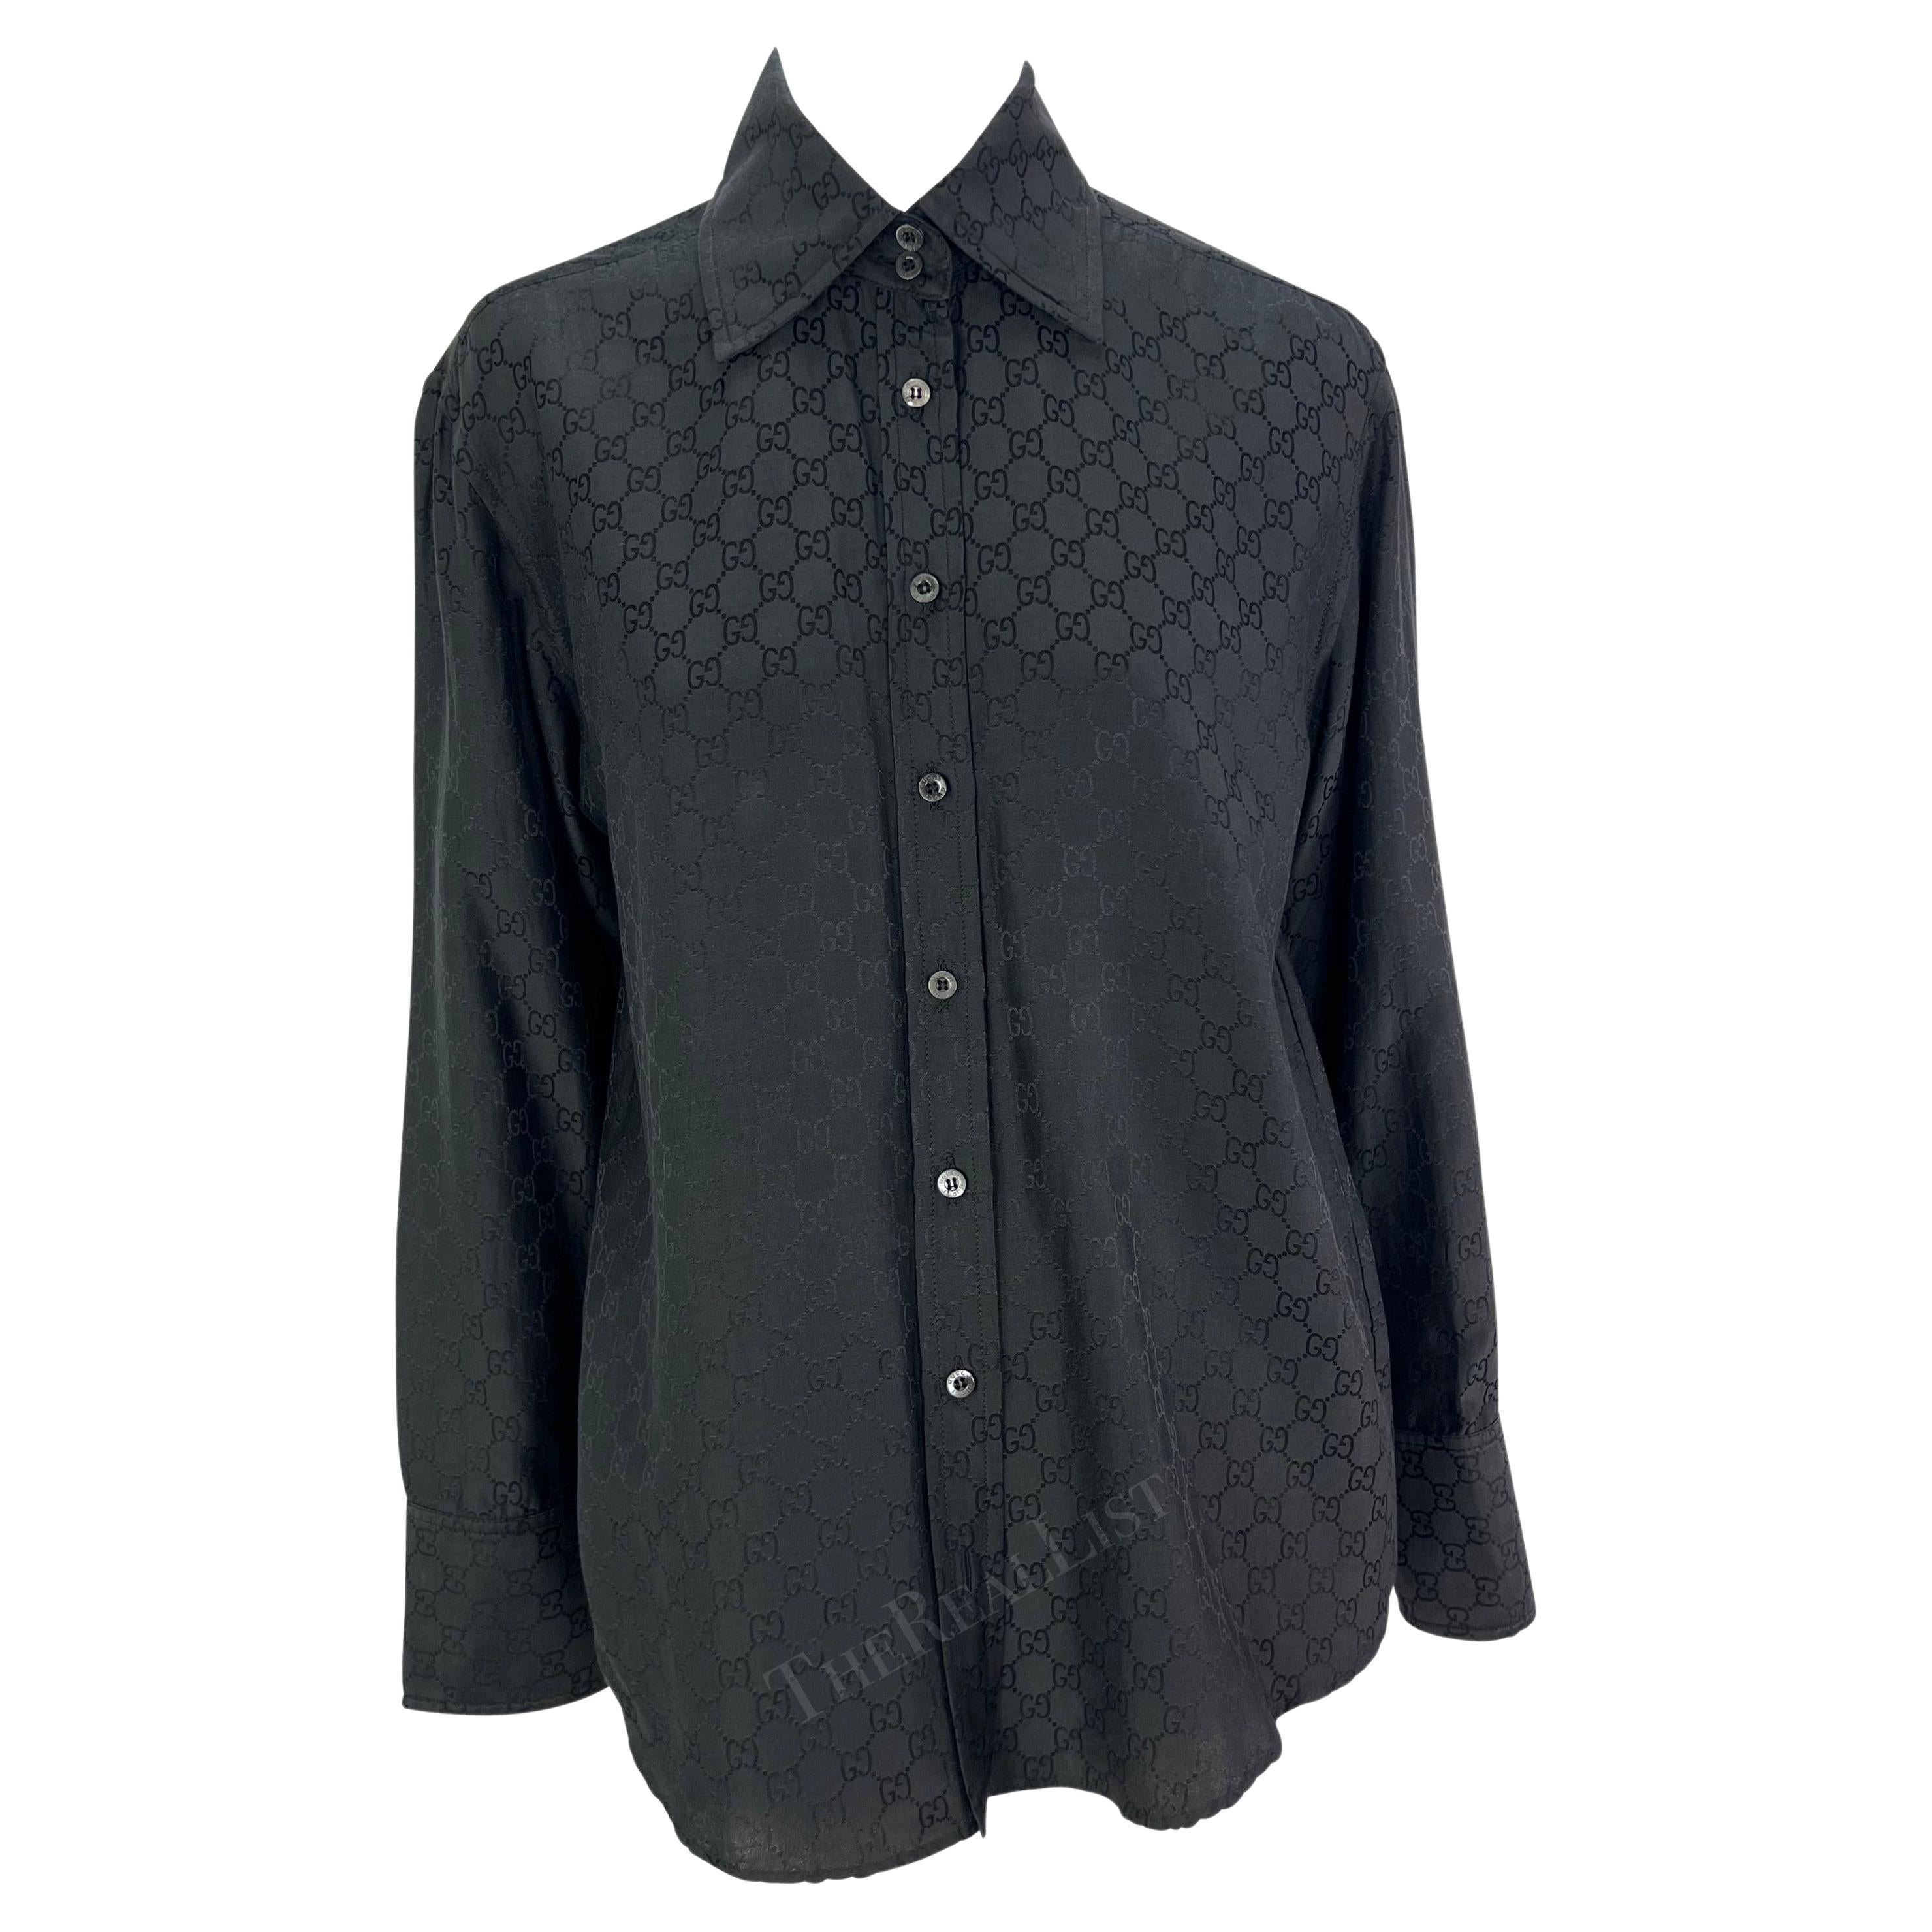 Voici une chemise à boutons avec le monogramme 'GG' de Gucci, dessinée par Tom Ford. Issue de la collection printemps/été 1998 de Ford, cette chemise est entièrement réalisée en tissu à motif de monogramme 'GG' et présente un col, une fermeture à